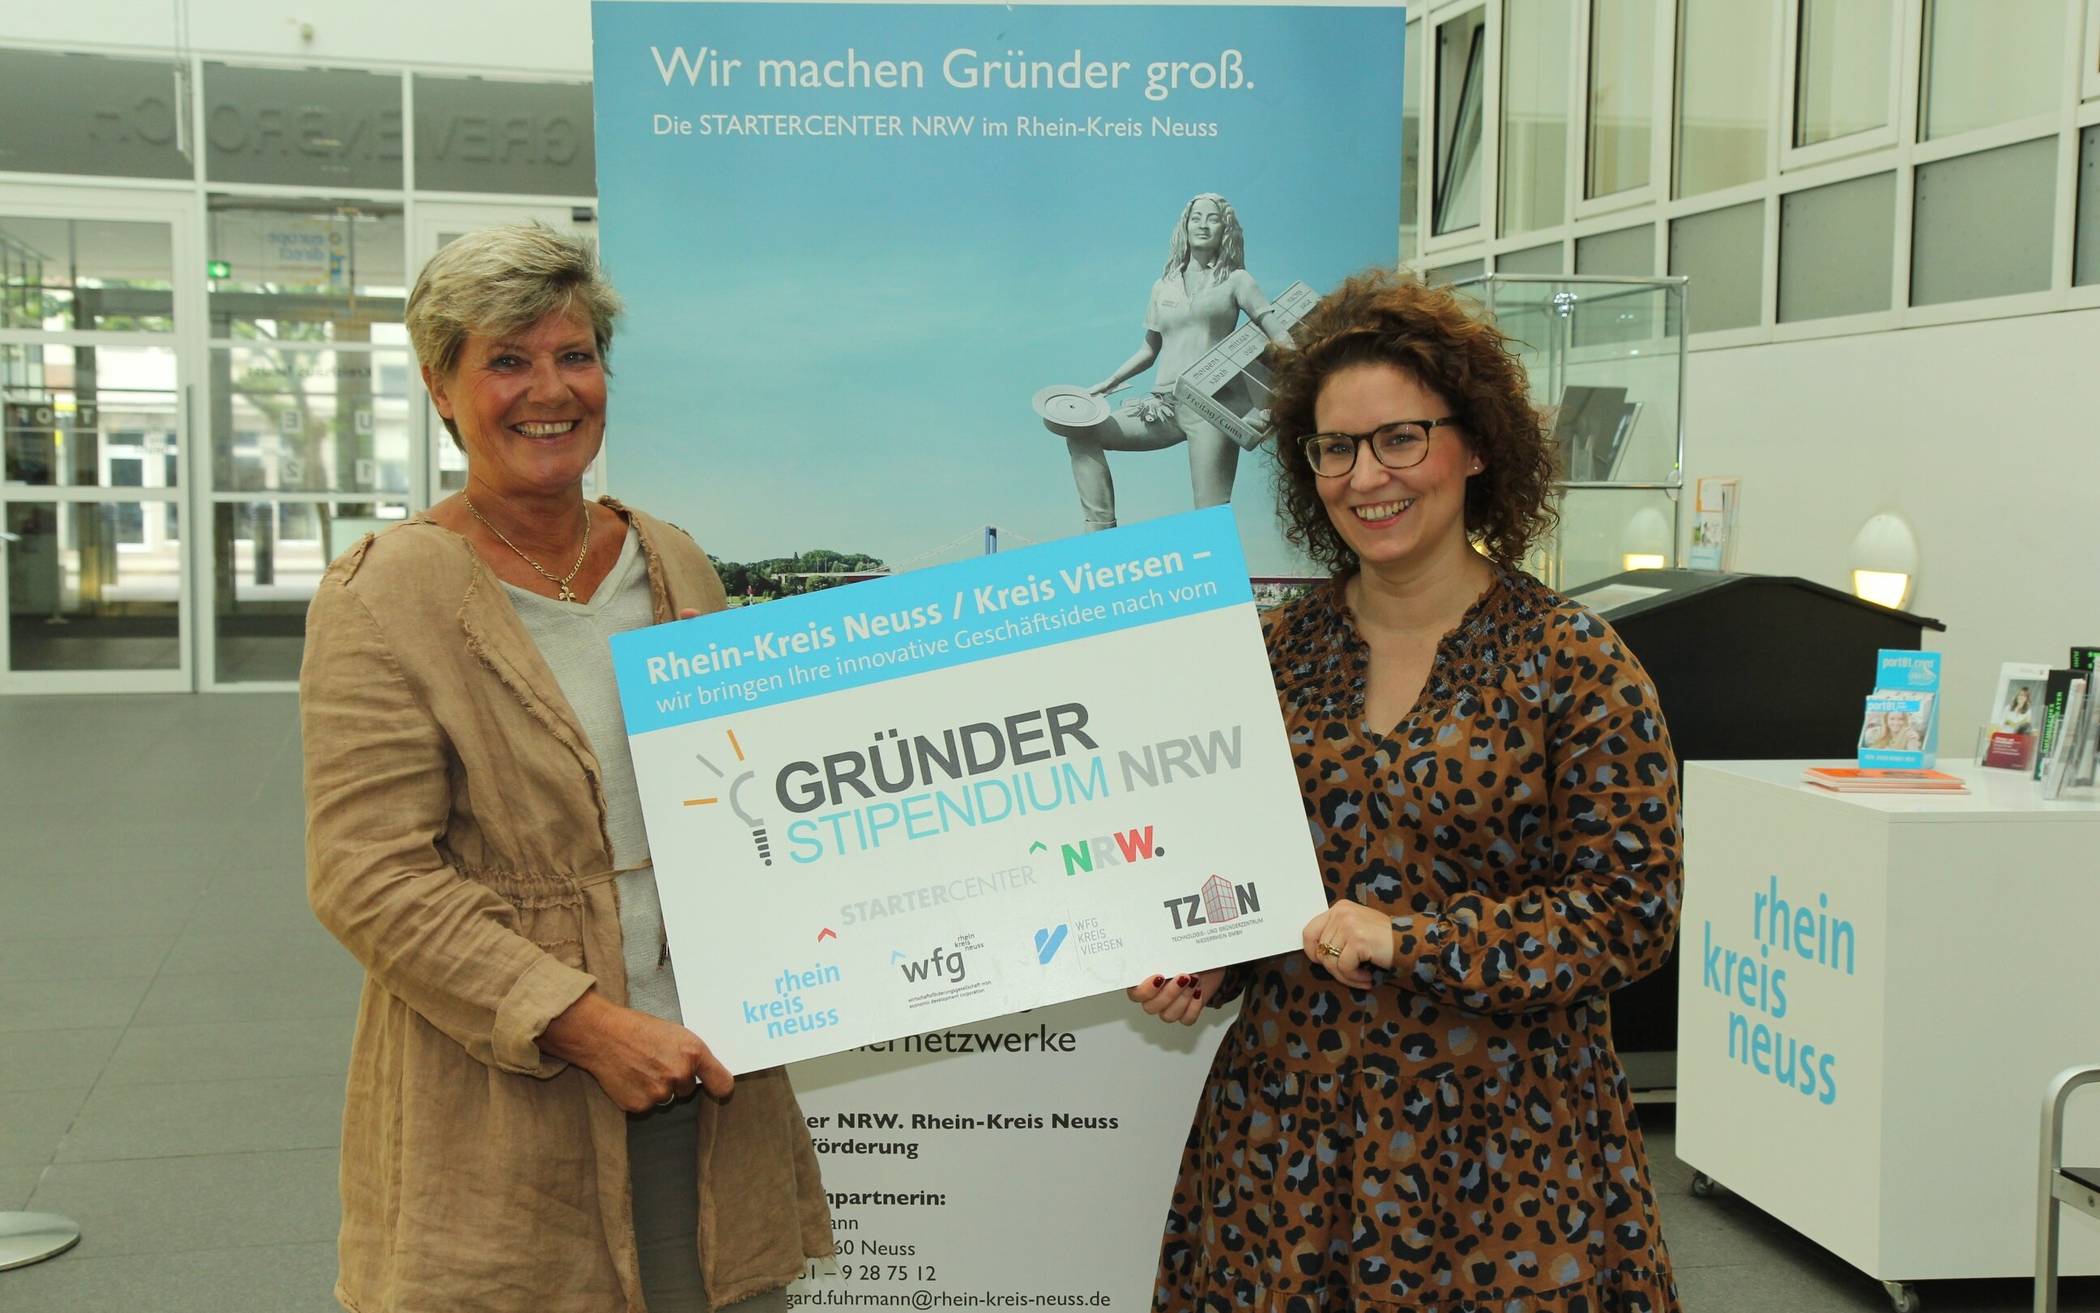  Gründerstipendium NRW an FemPowerMentoring vergeben (von links): Hildegard Fuhrmann und Sarah Sorhagen. 
   